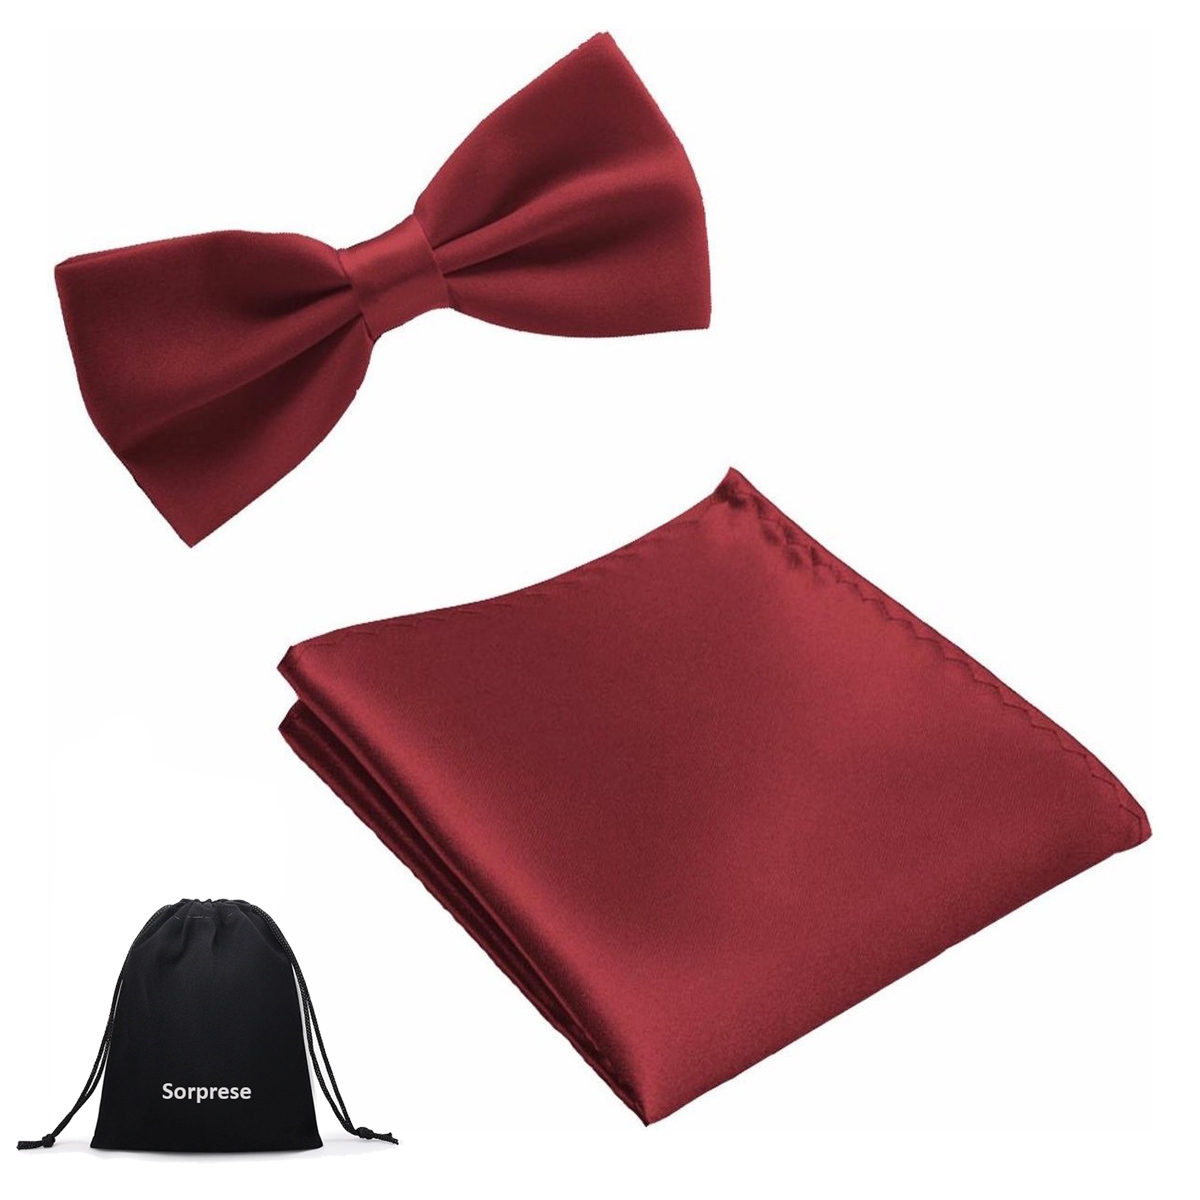 modder Afstoten werk Strik + Pochette Bordeaux Rood - Sorprese - Mode accessoires voor Hem & Haar